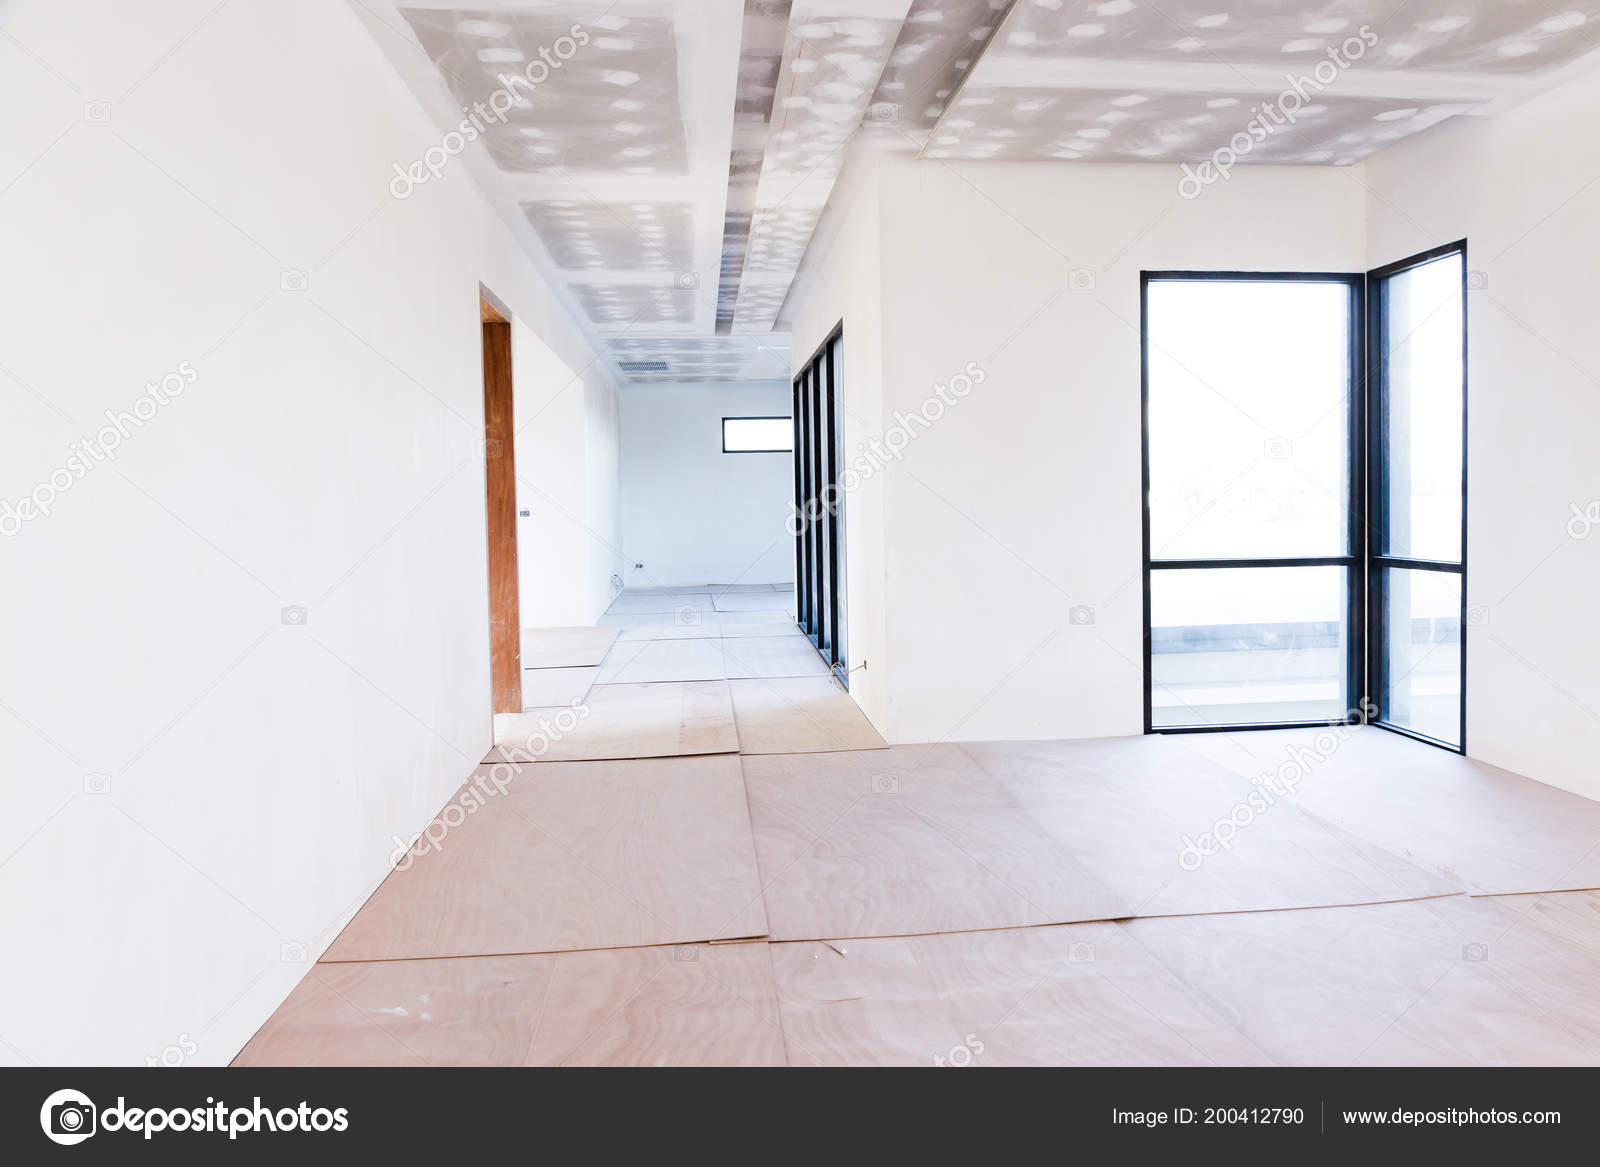 Empty Room Interior Build Gypsum Board Ceiling Air